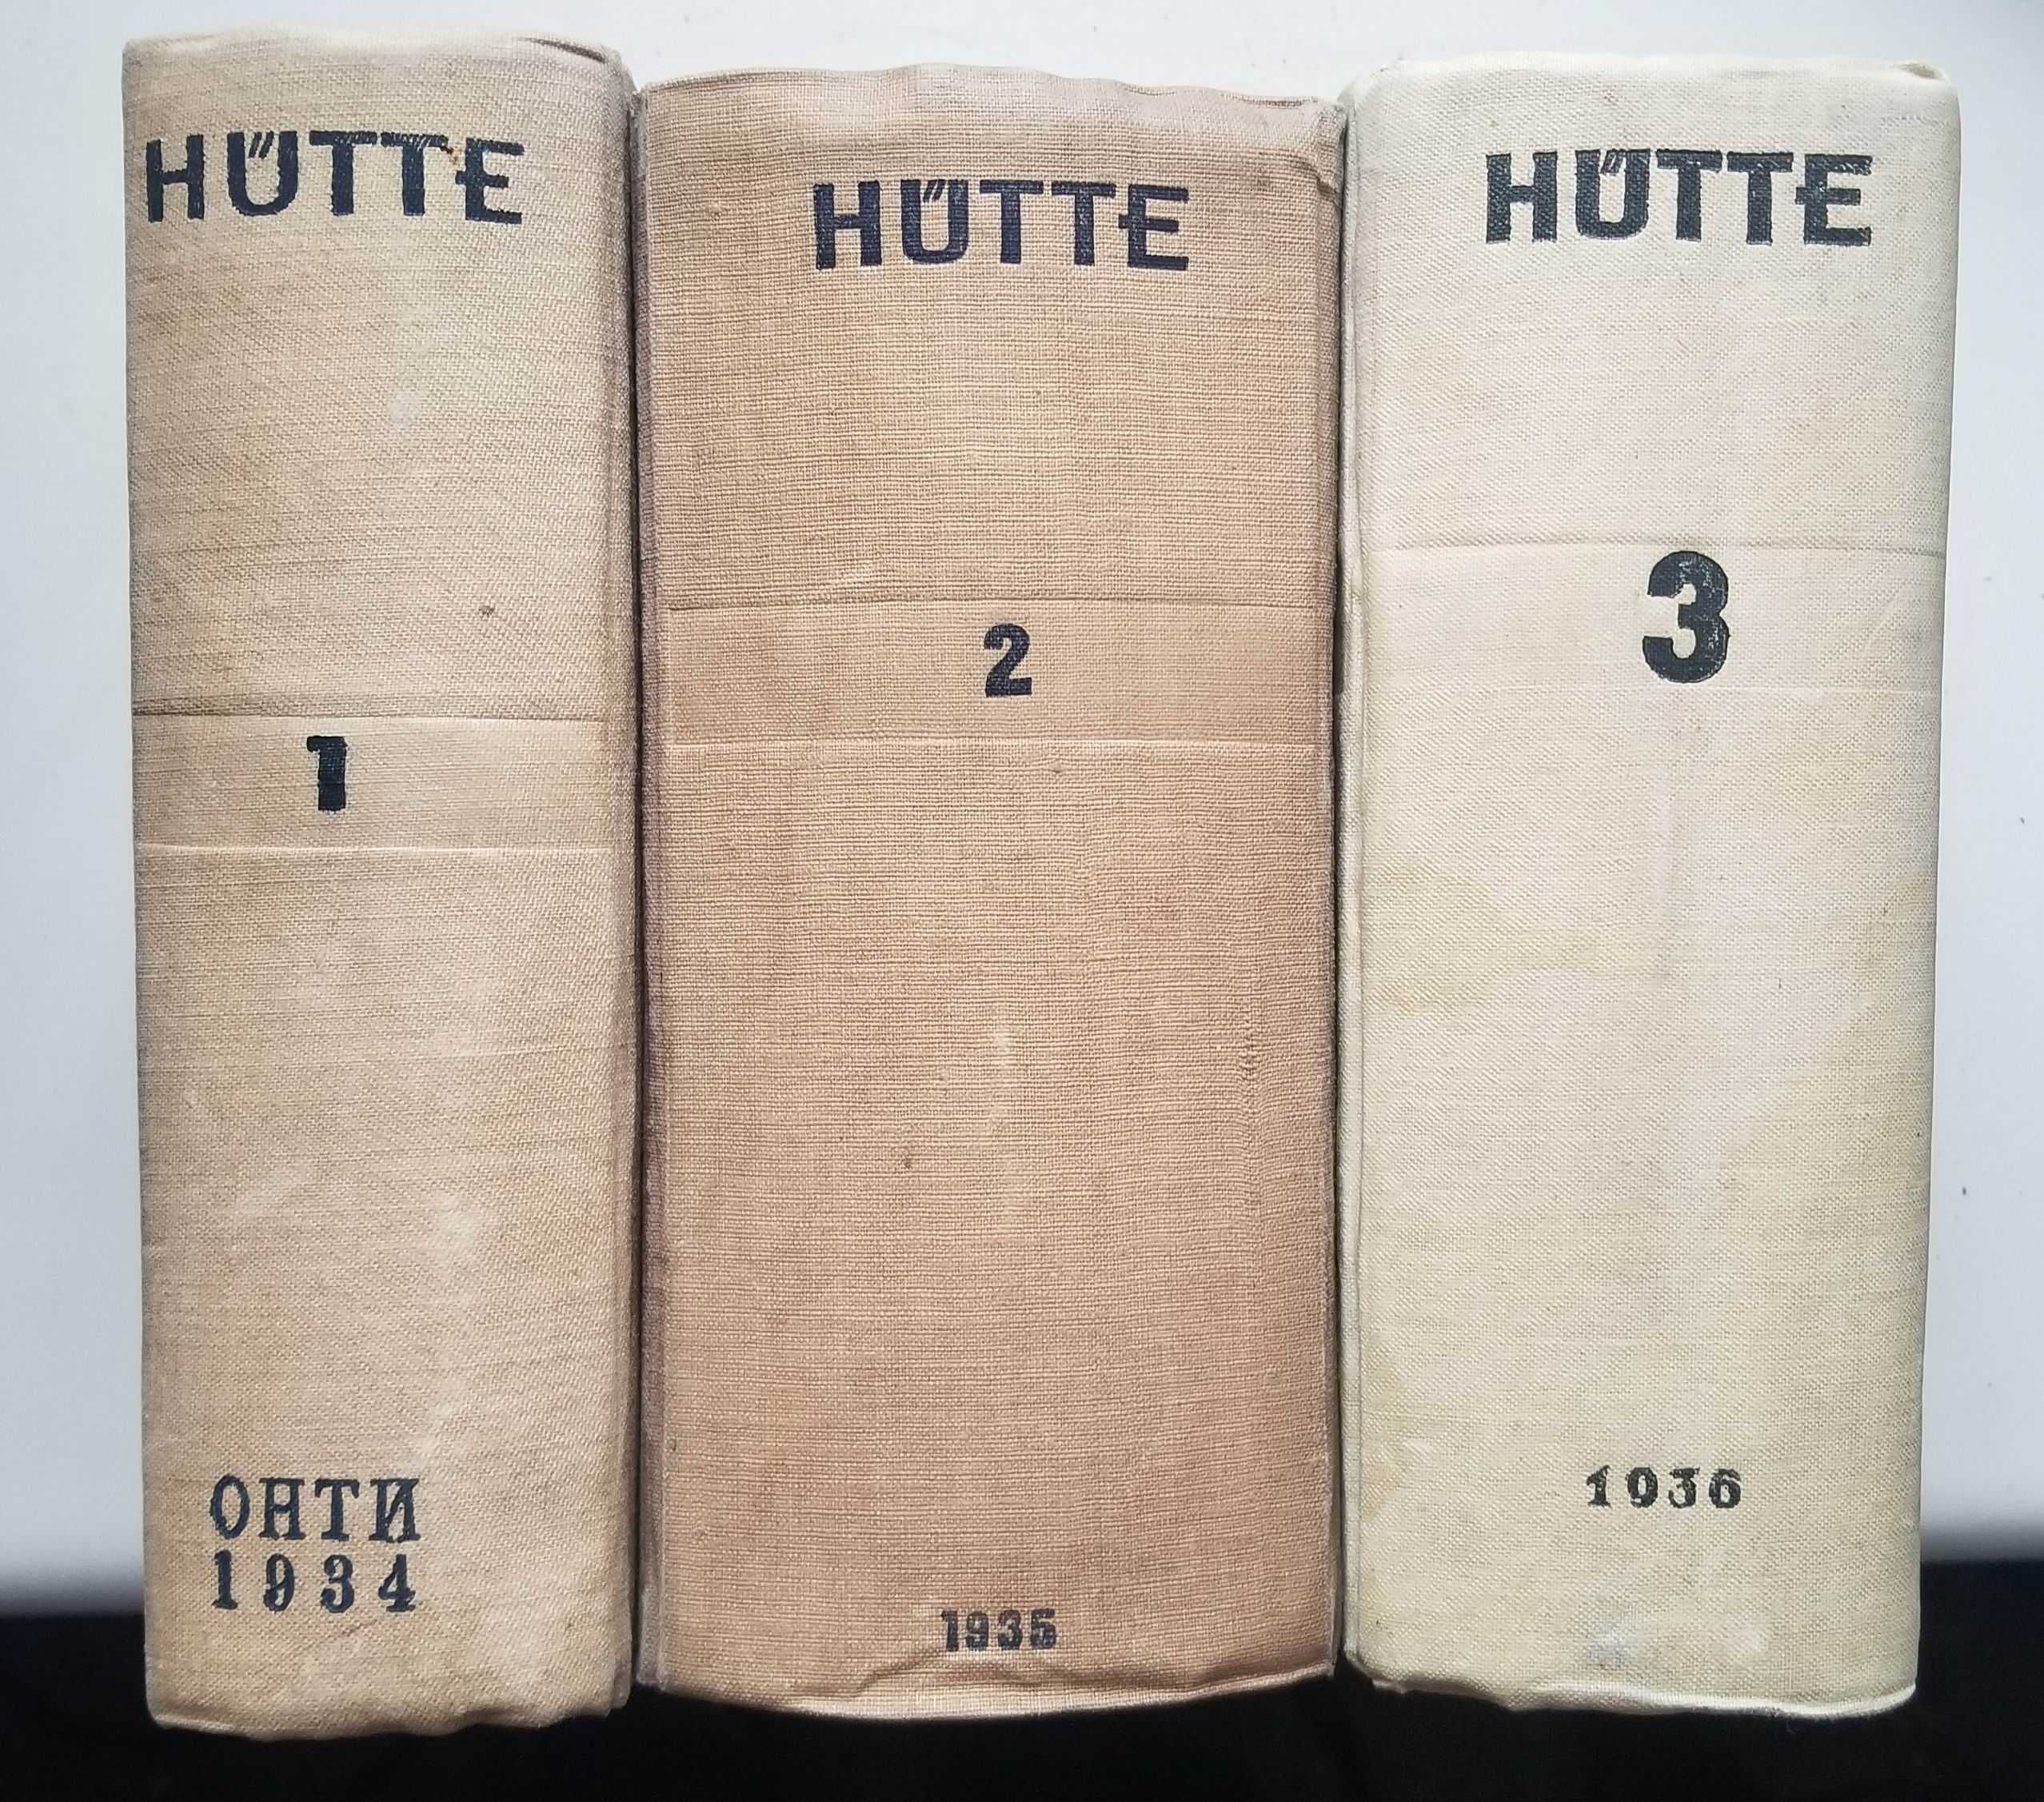 "HUTTE справочник", 1934-1936, том 1-3. Стан добрий